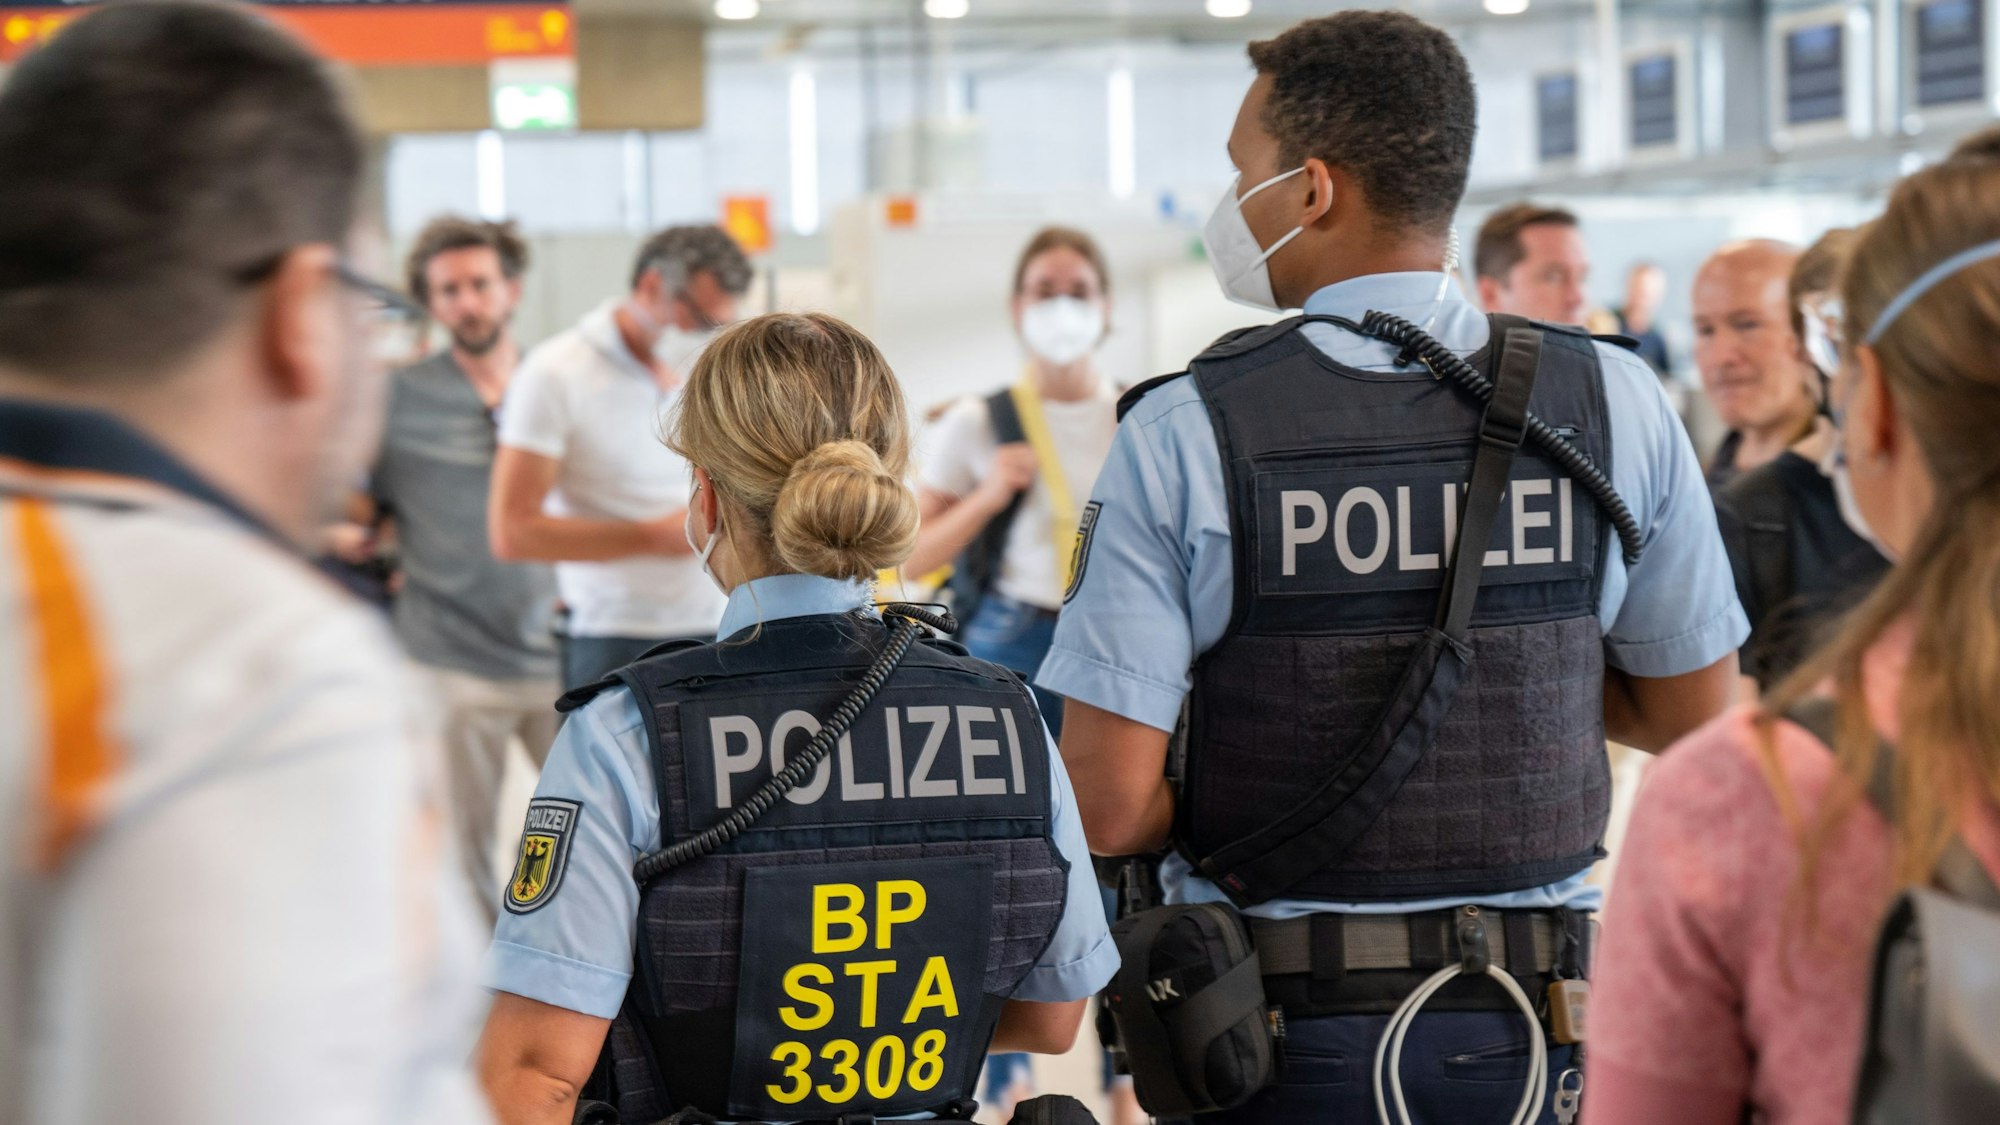 Zu sehen sind zwei Polizisten in der Rückansicht am Flughafen Köln/Bonn. Daneben, davor und dahinter befinden sich Fluggäste.